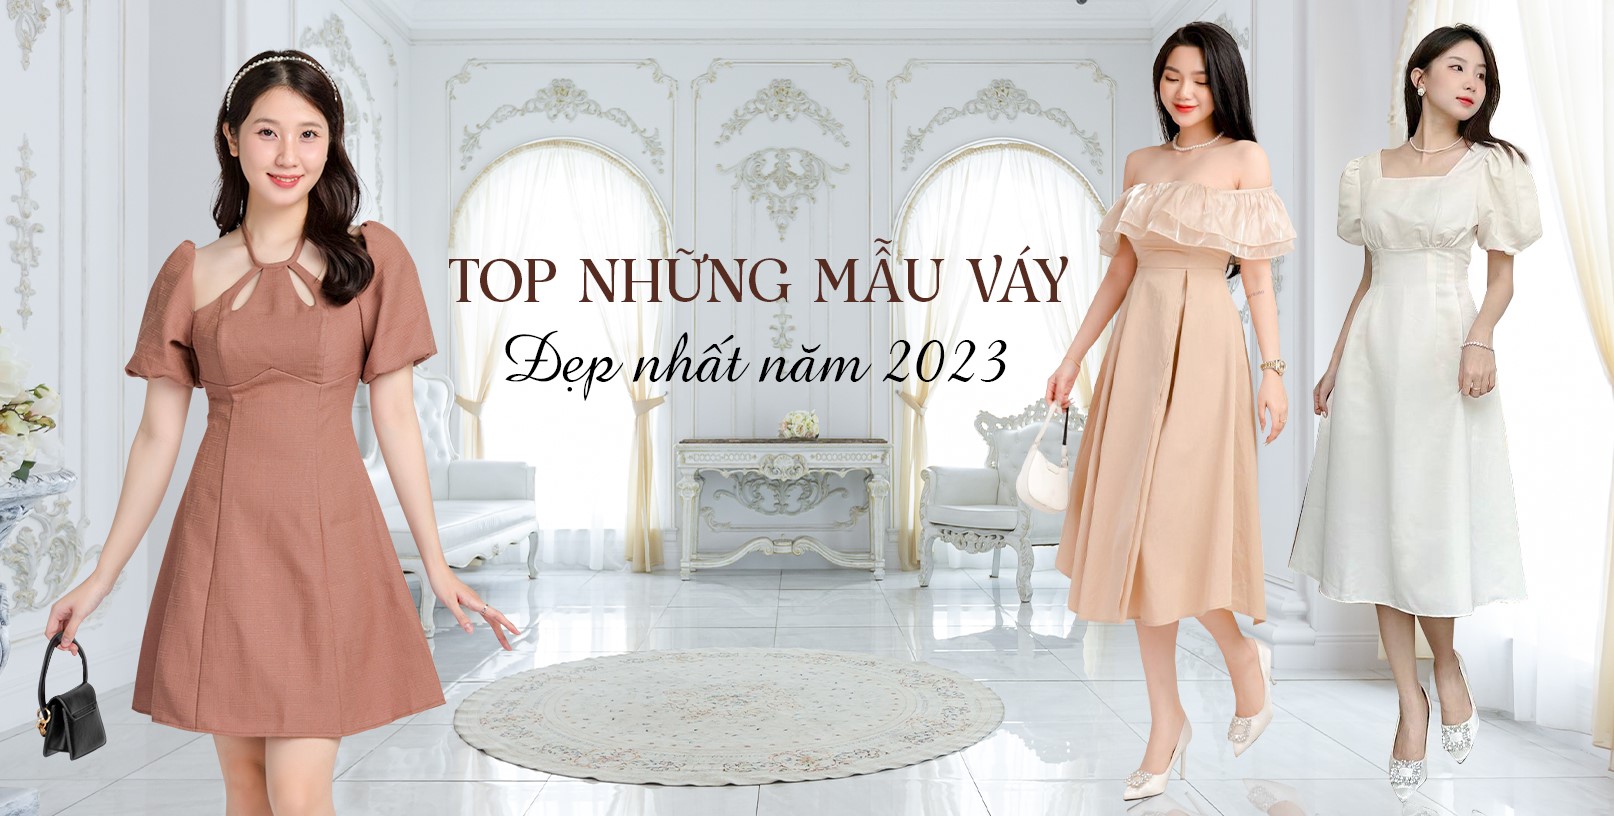 Mẫu váy xòe liền thân đẹp năm 2023 nhất định bạn phải thử